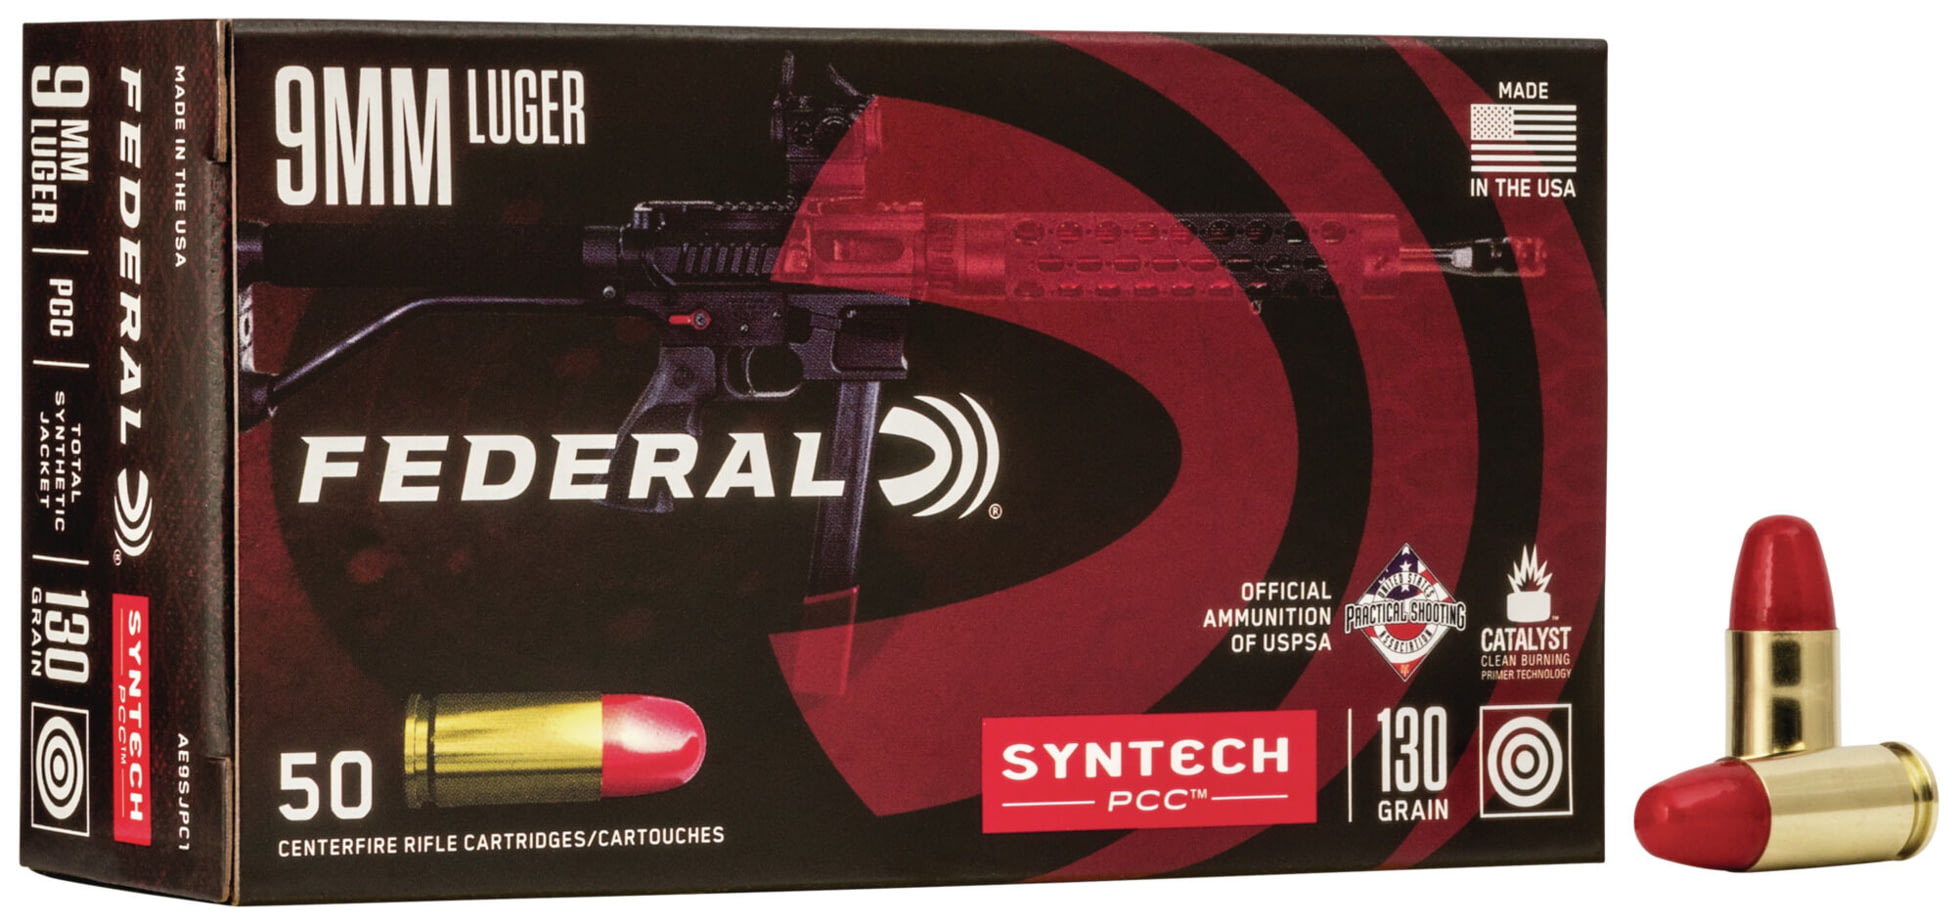 Federal Premium Centerfire Handgun Ammunition 9mm Luger 130 grain Syntech Total Synthetic Jacket Centerfire Pistol Ammunition